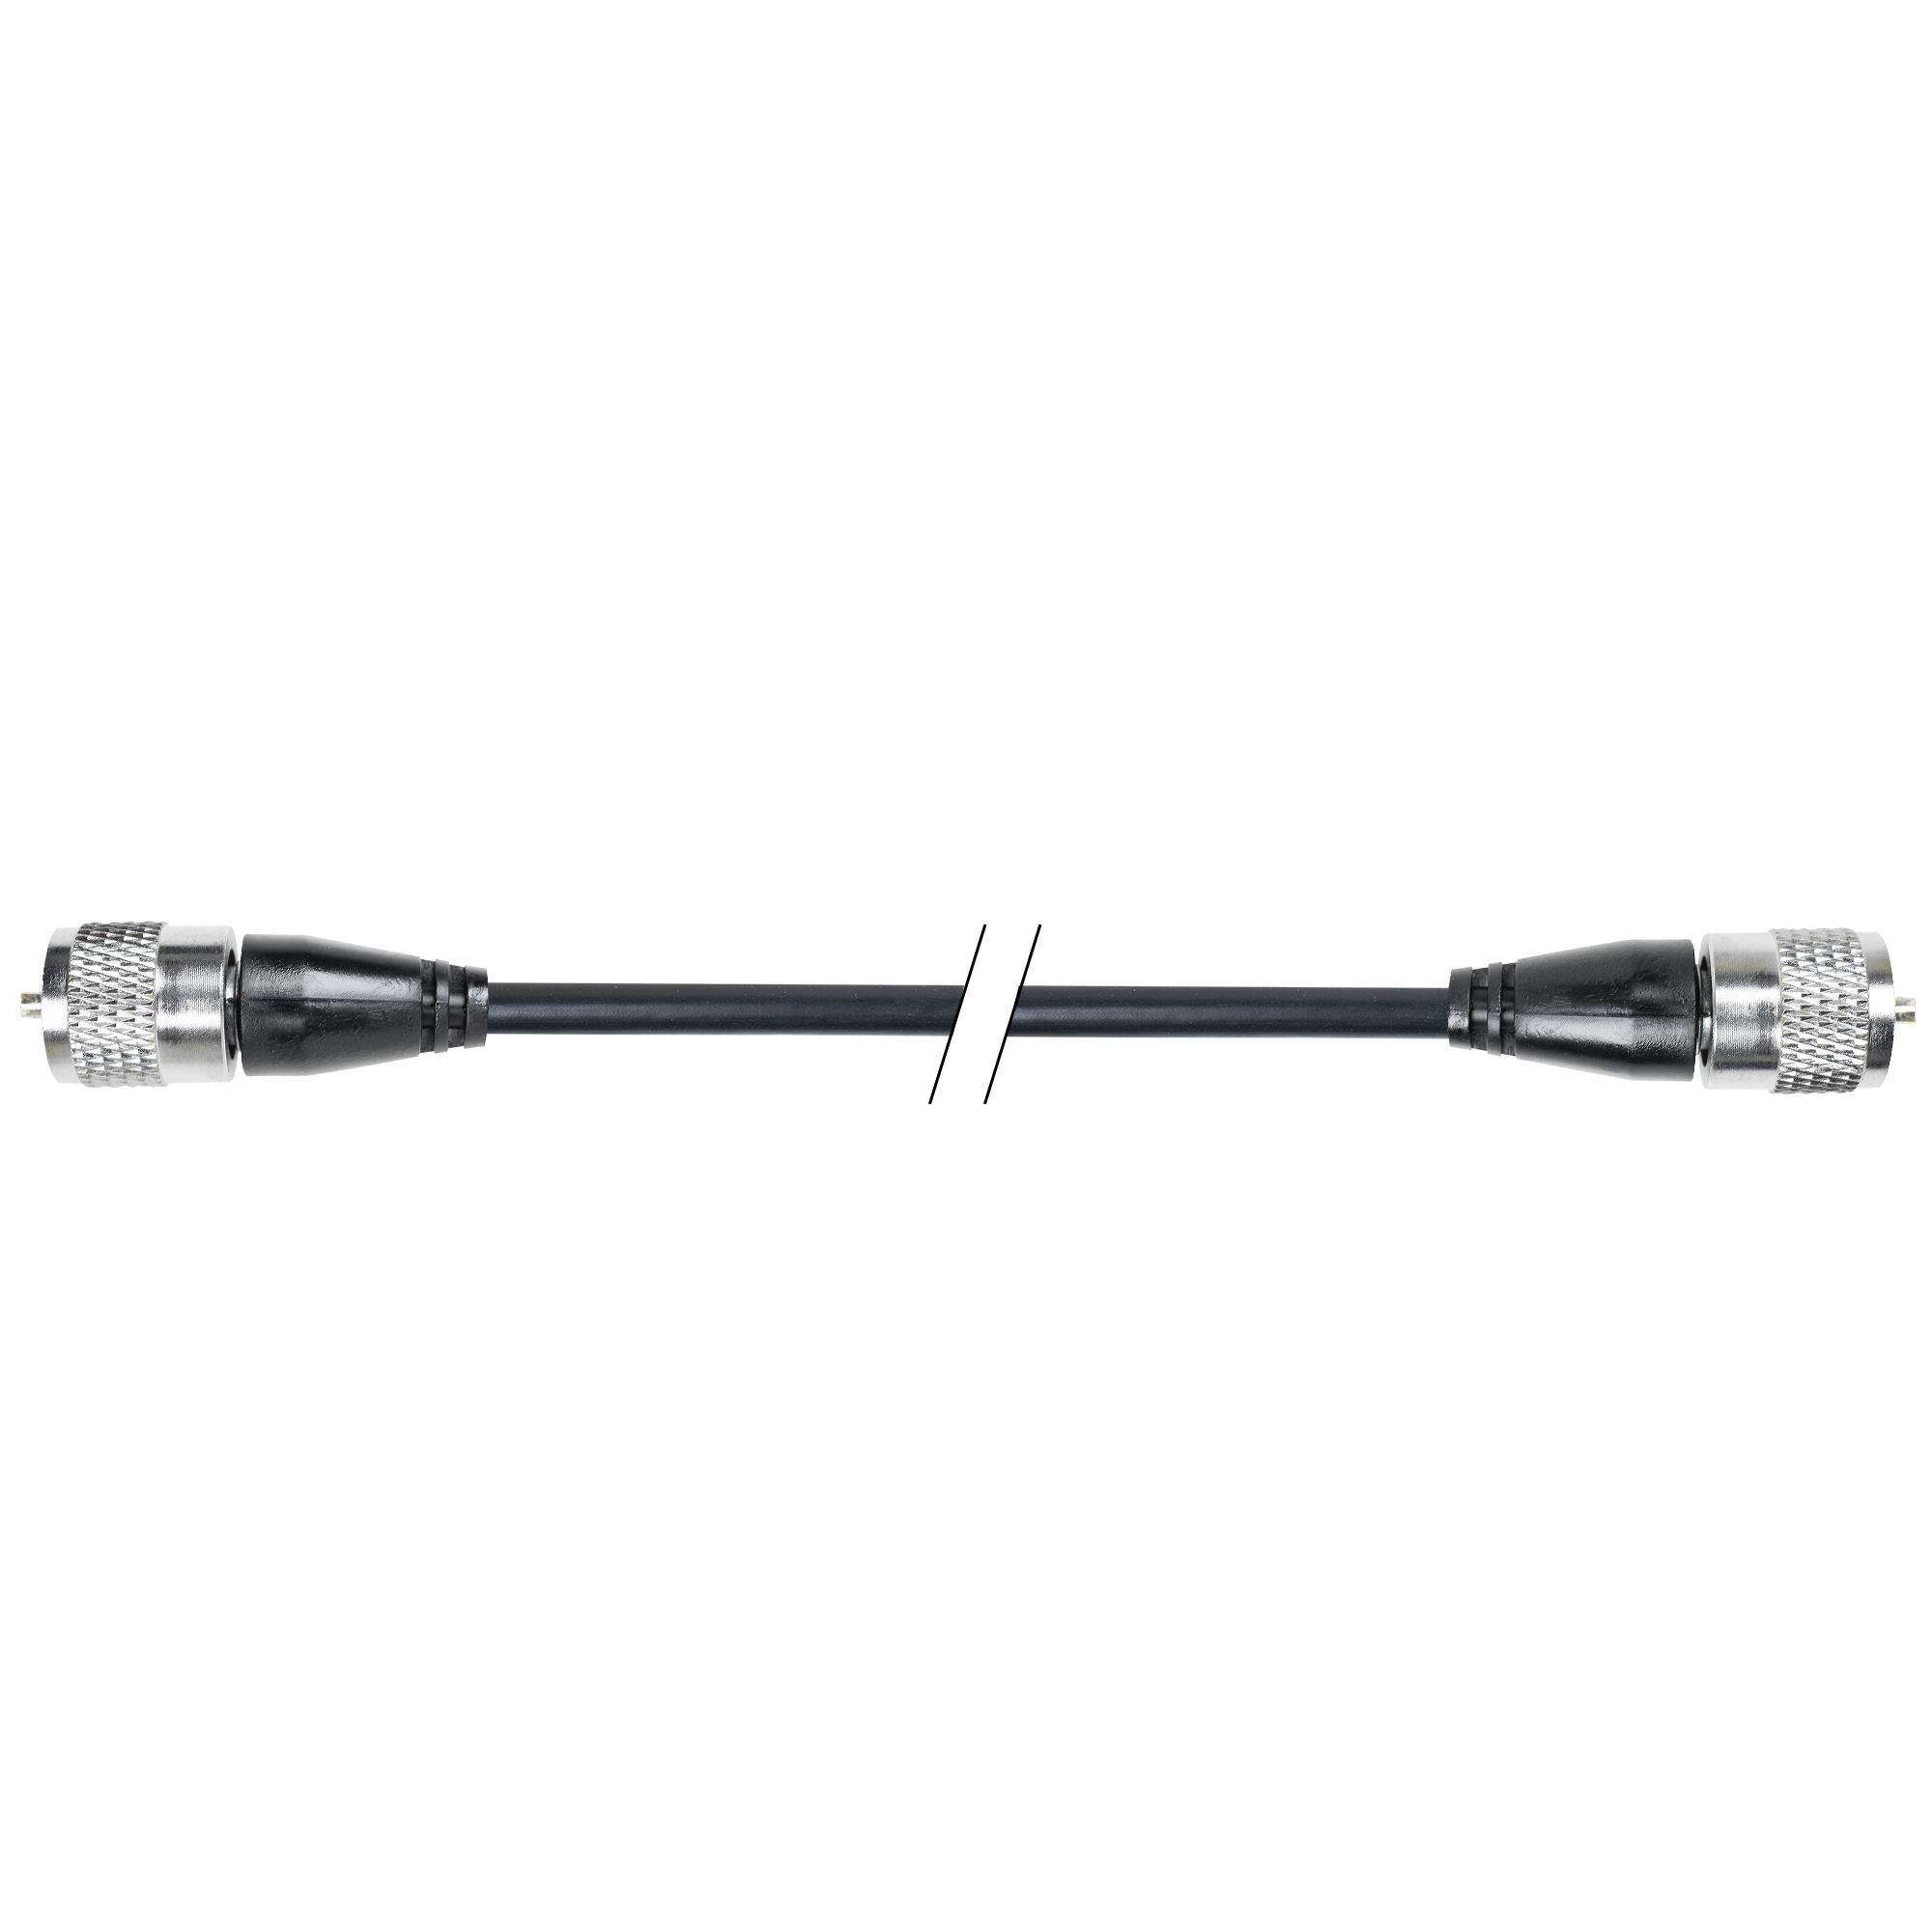 Cablu de legatura PNI R150 cu mufe PL259 lungime 1.5m image1